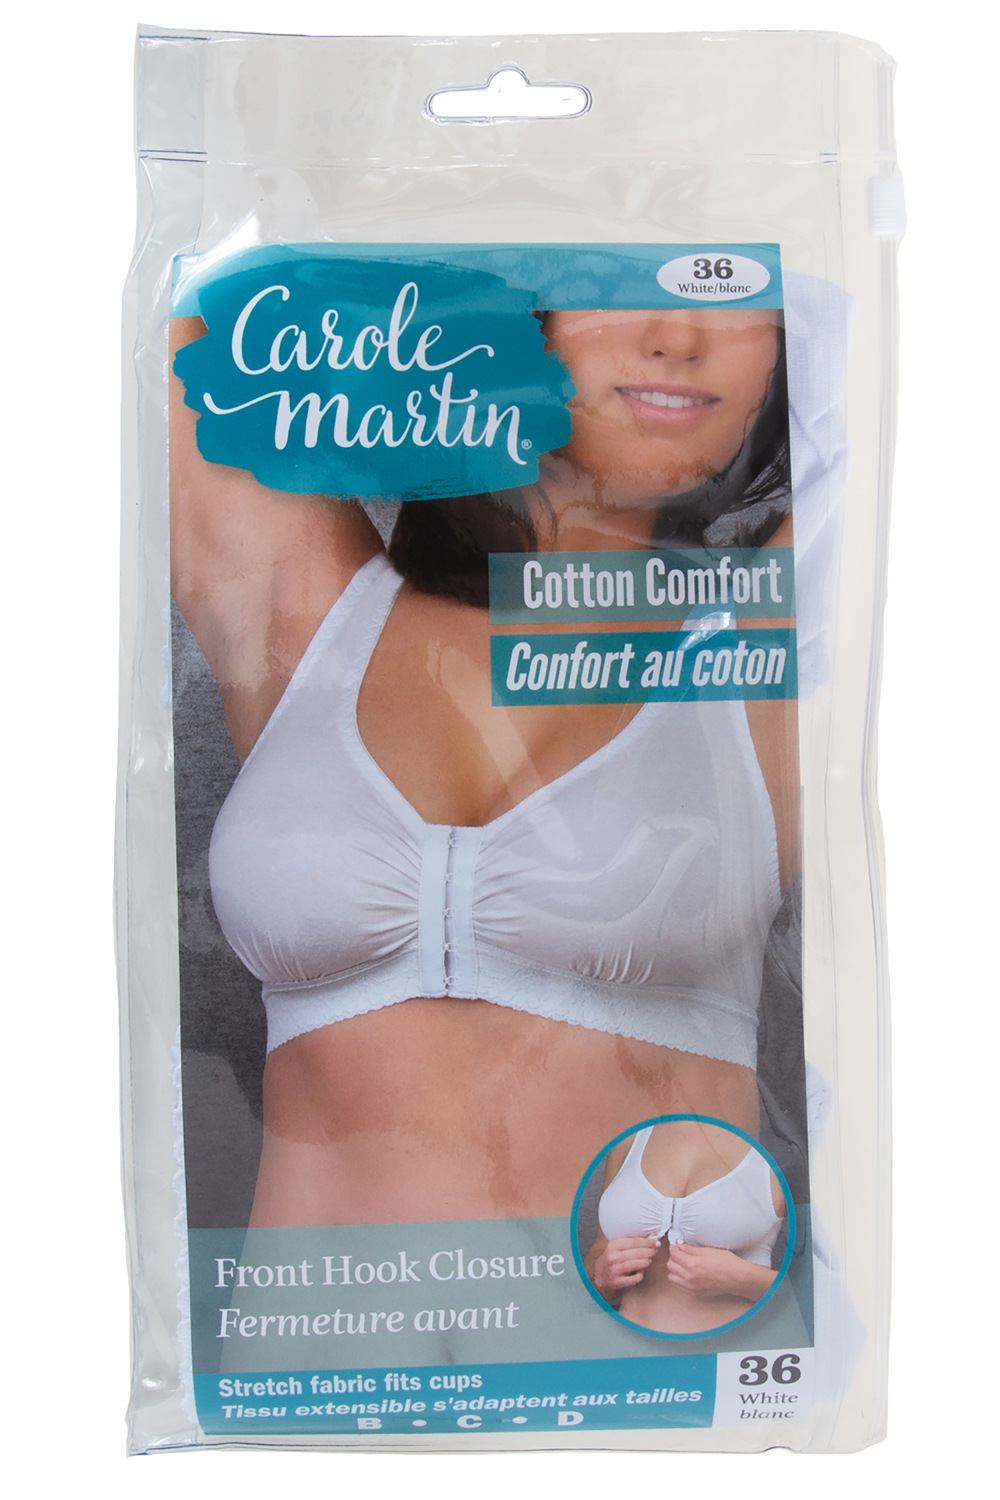 Carole Martin - Cotton Comfort bra, white, 36. Colour: white. Size